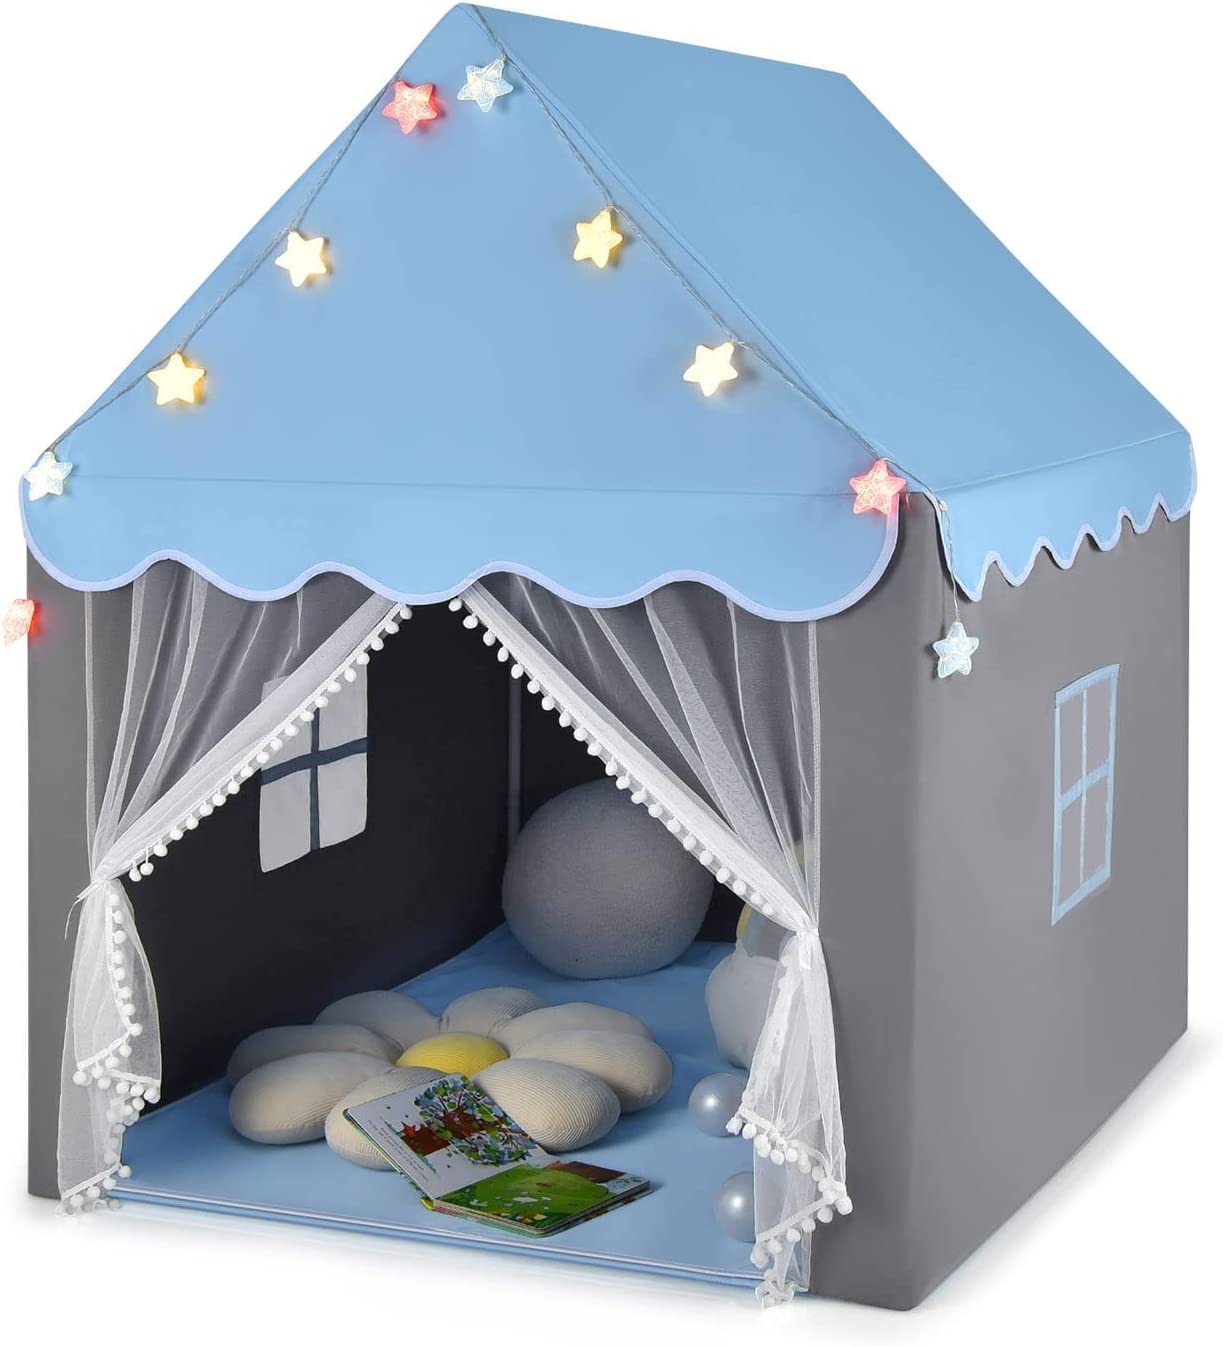 Tente de jeux pour enfants, cabane de style princesse en coton